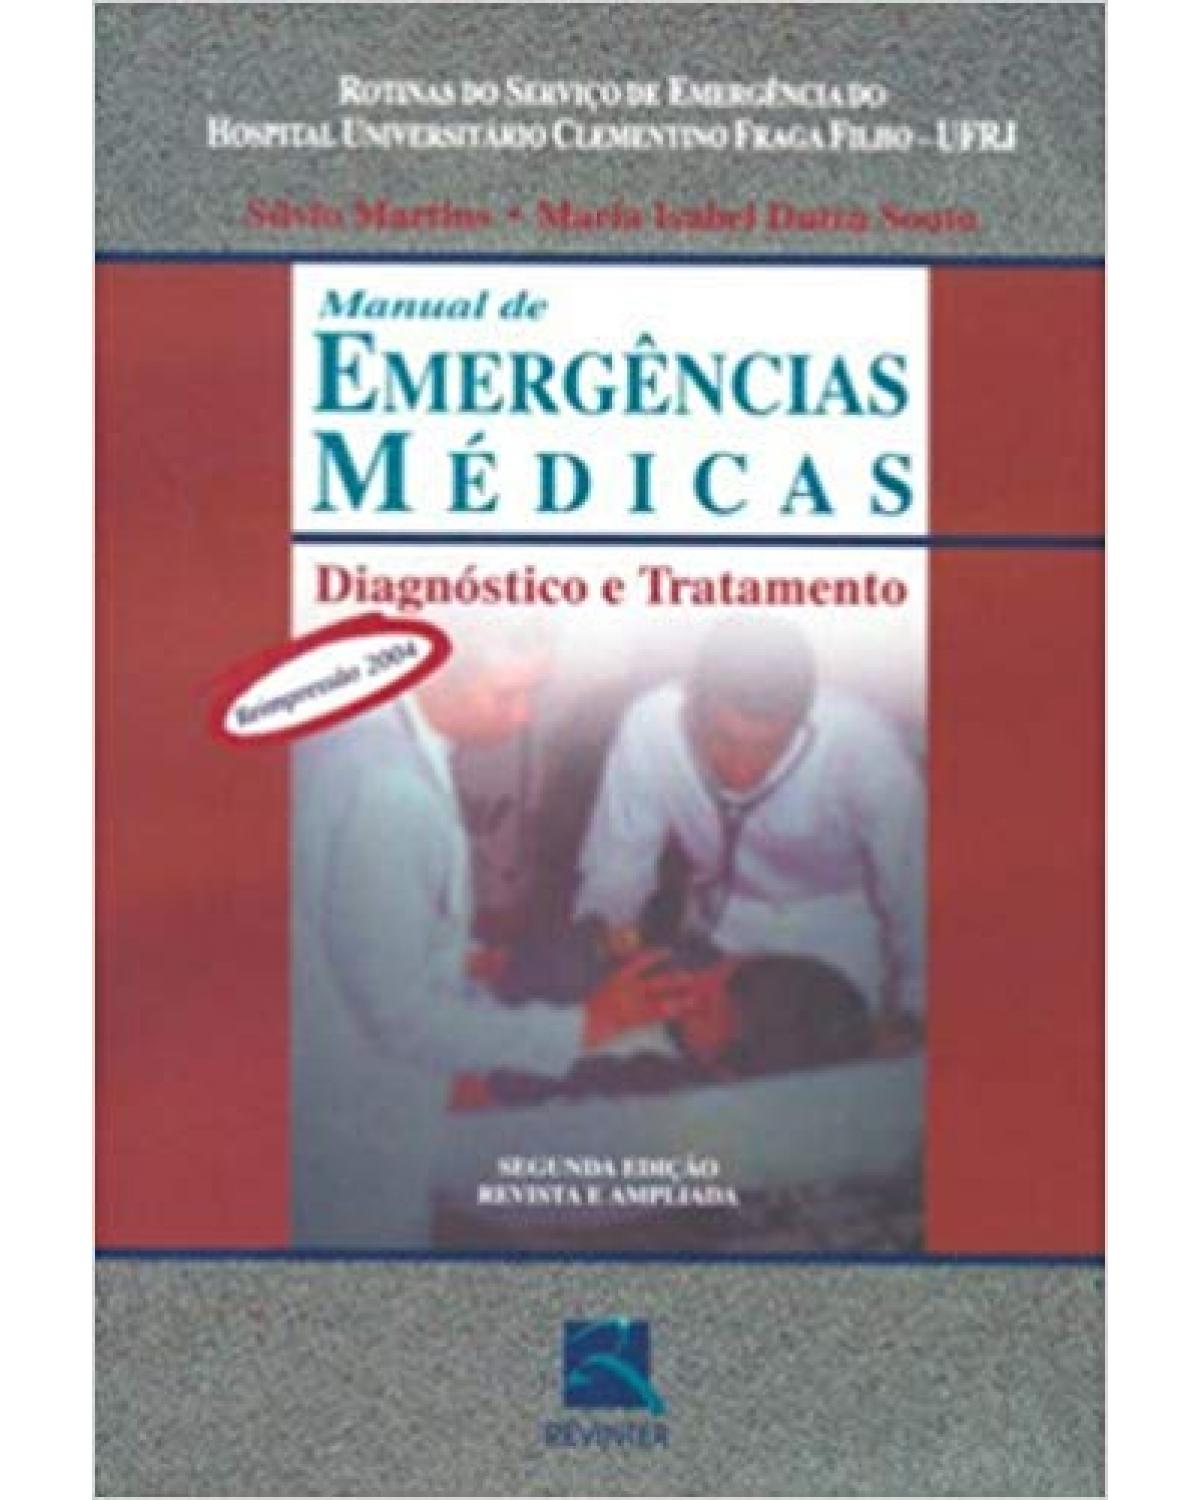 Manual de emergências médicas - diagnóstico e tratamento - Rotinas do serviço de emergência do Hospital Universitário Clementino Fraga Filho - UFRJ - 2ª Edição | 2003